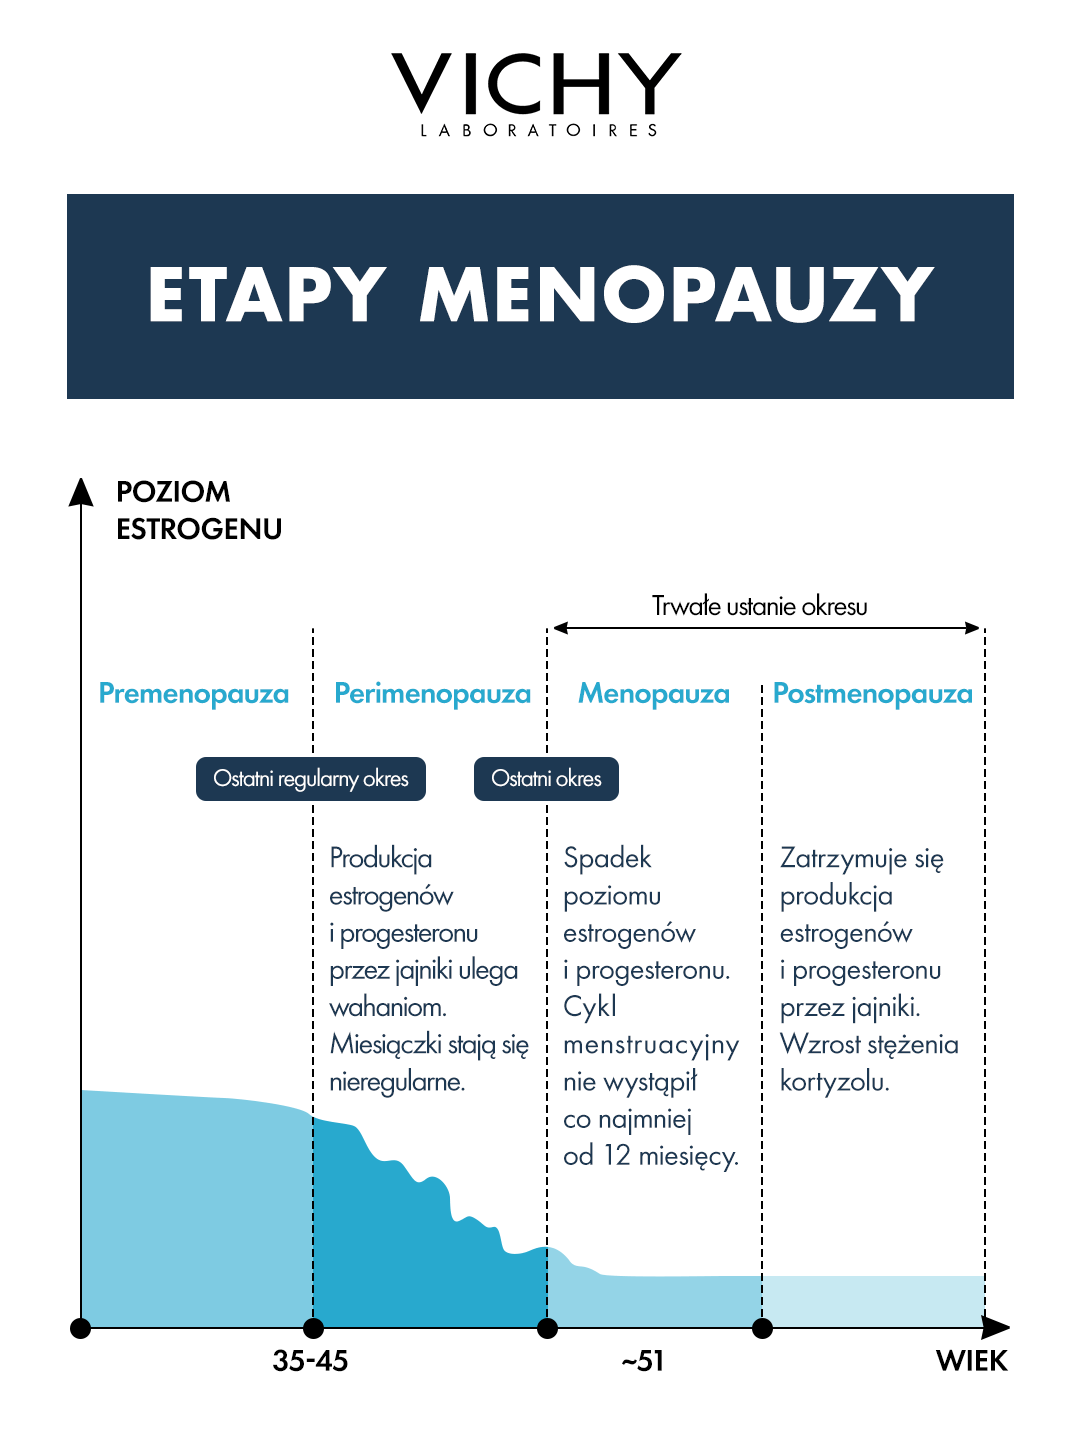 Etapy menopauzy a miesiączka